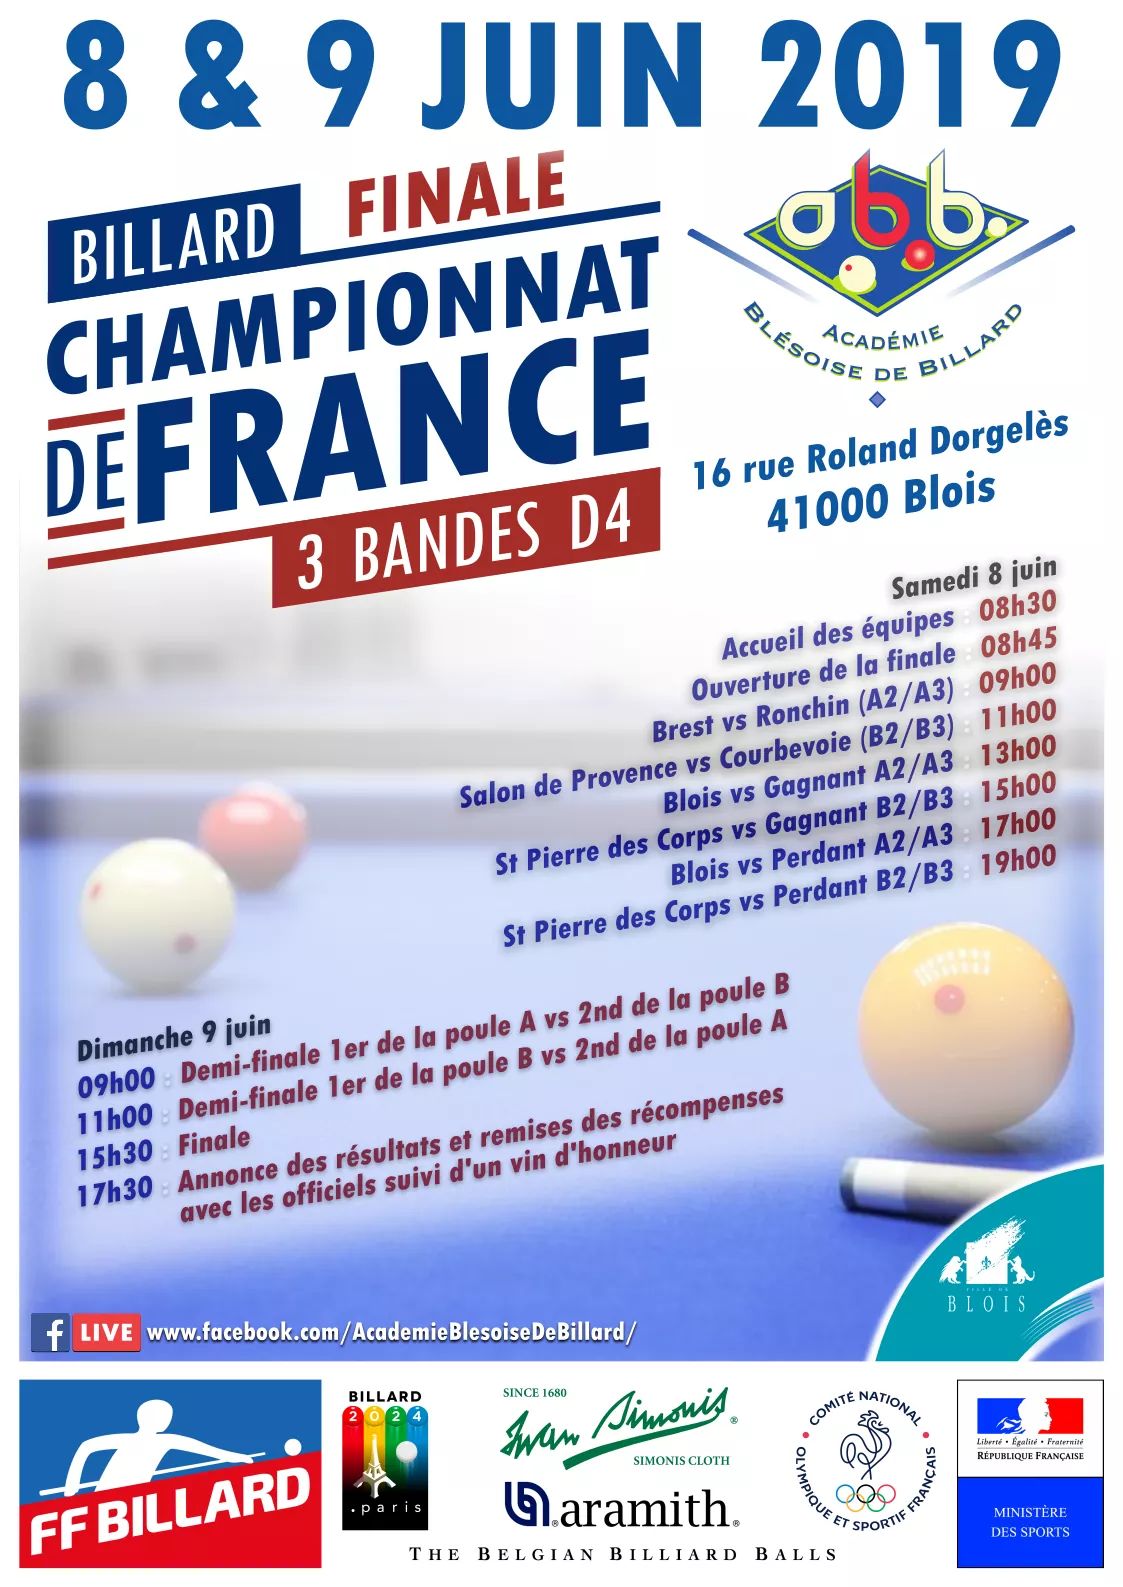 FFB 3 Bandes D4 Finale de France des 8 et 9 juin 2019 Blois